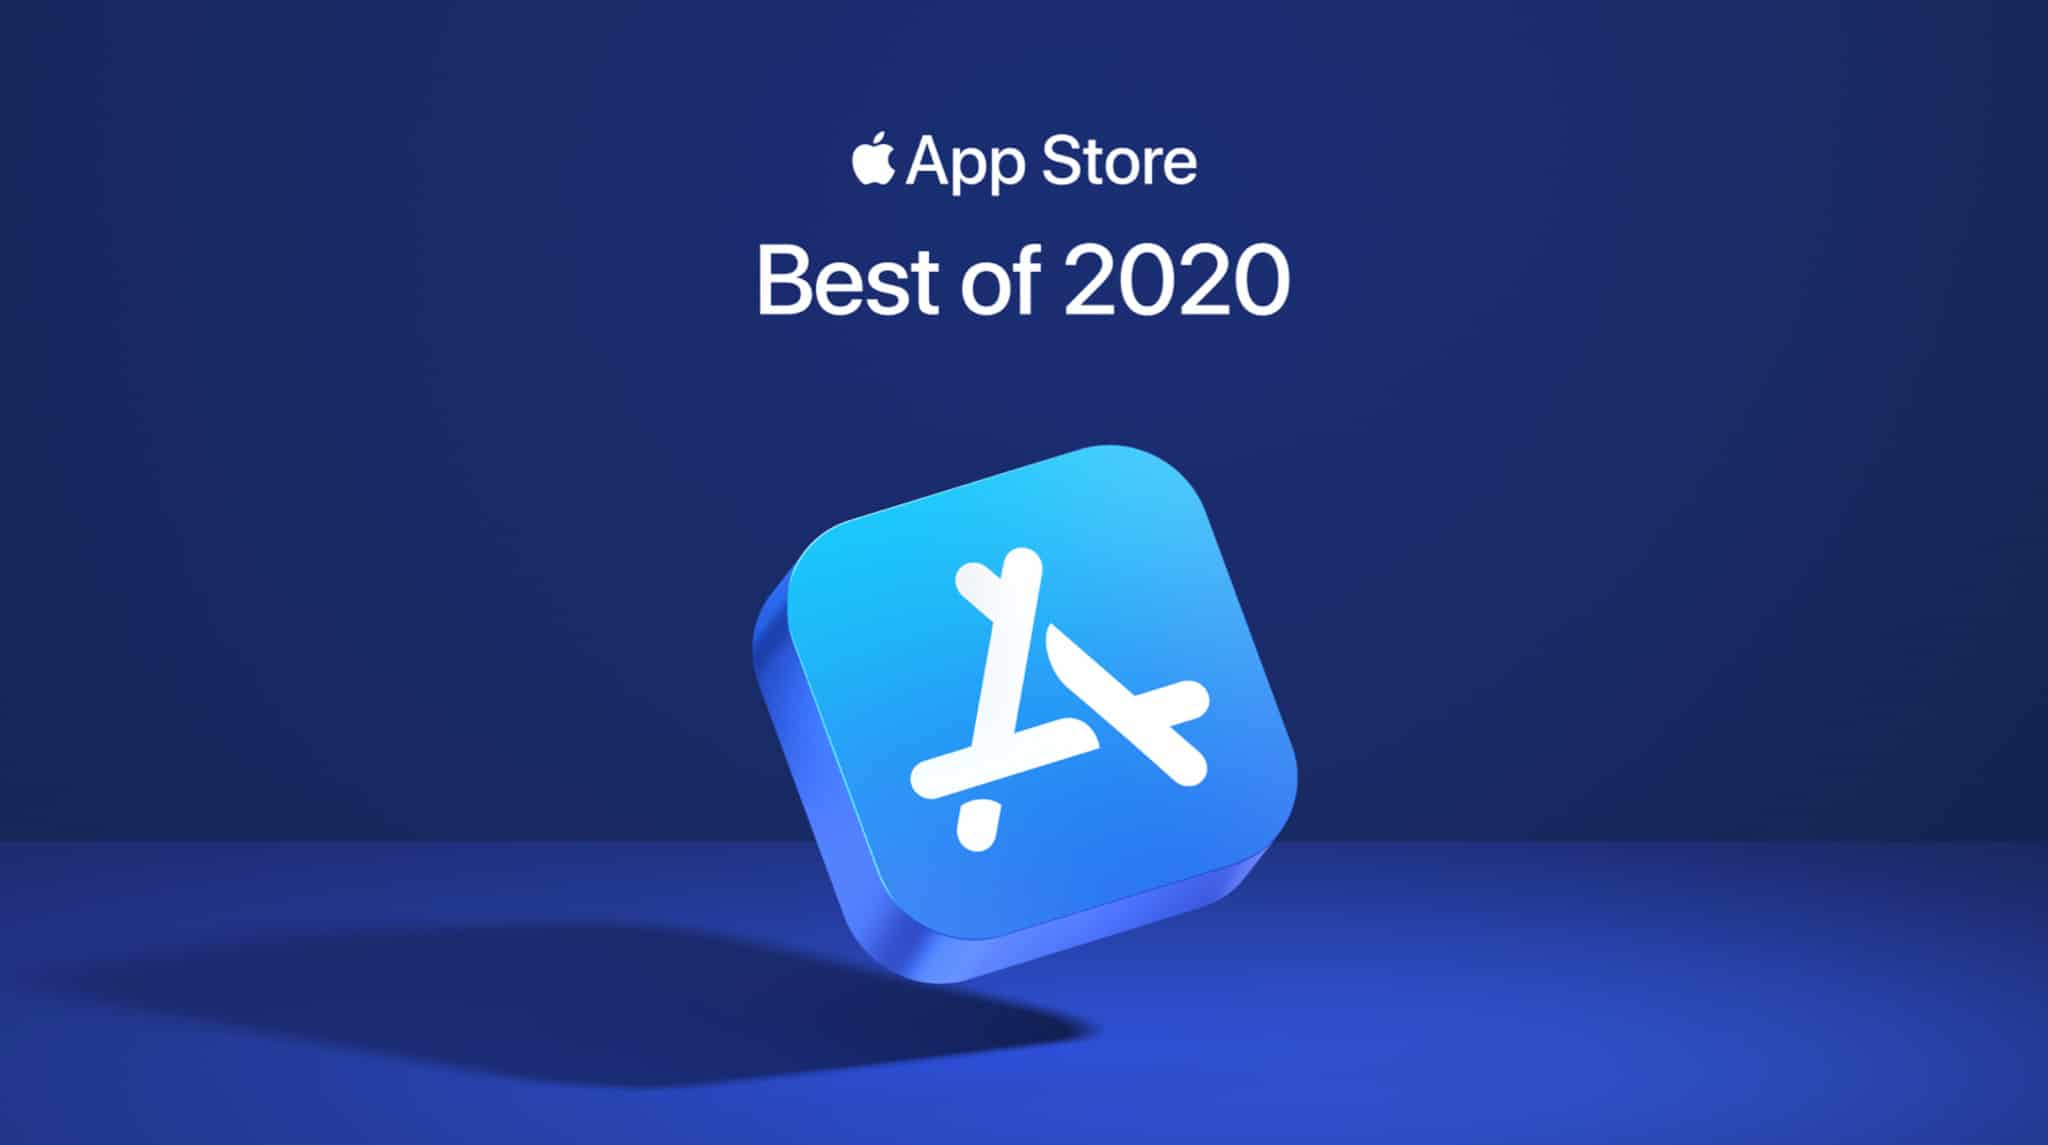 Apple anuncia sus mejores aplicaciones en 2020